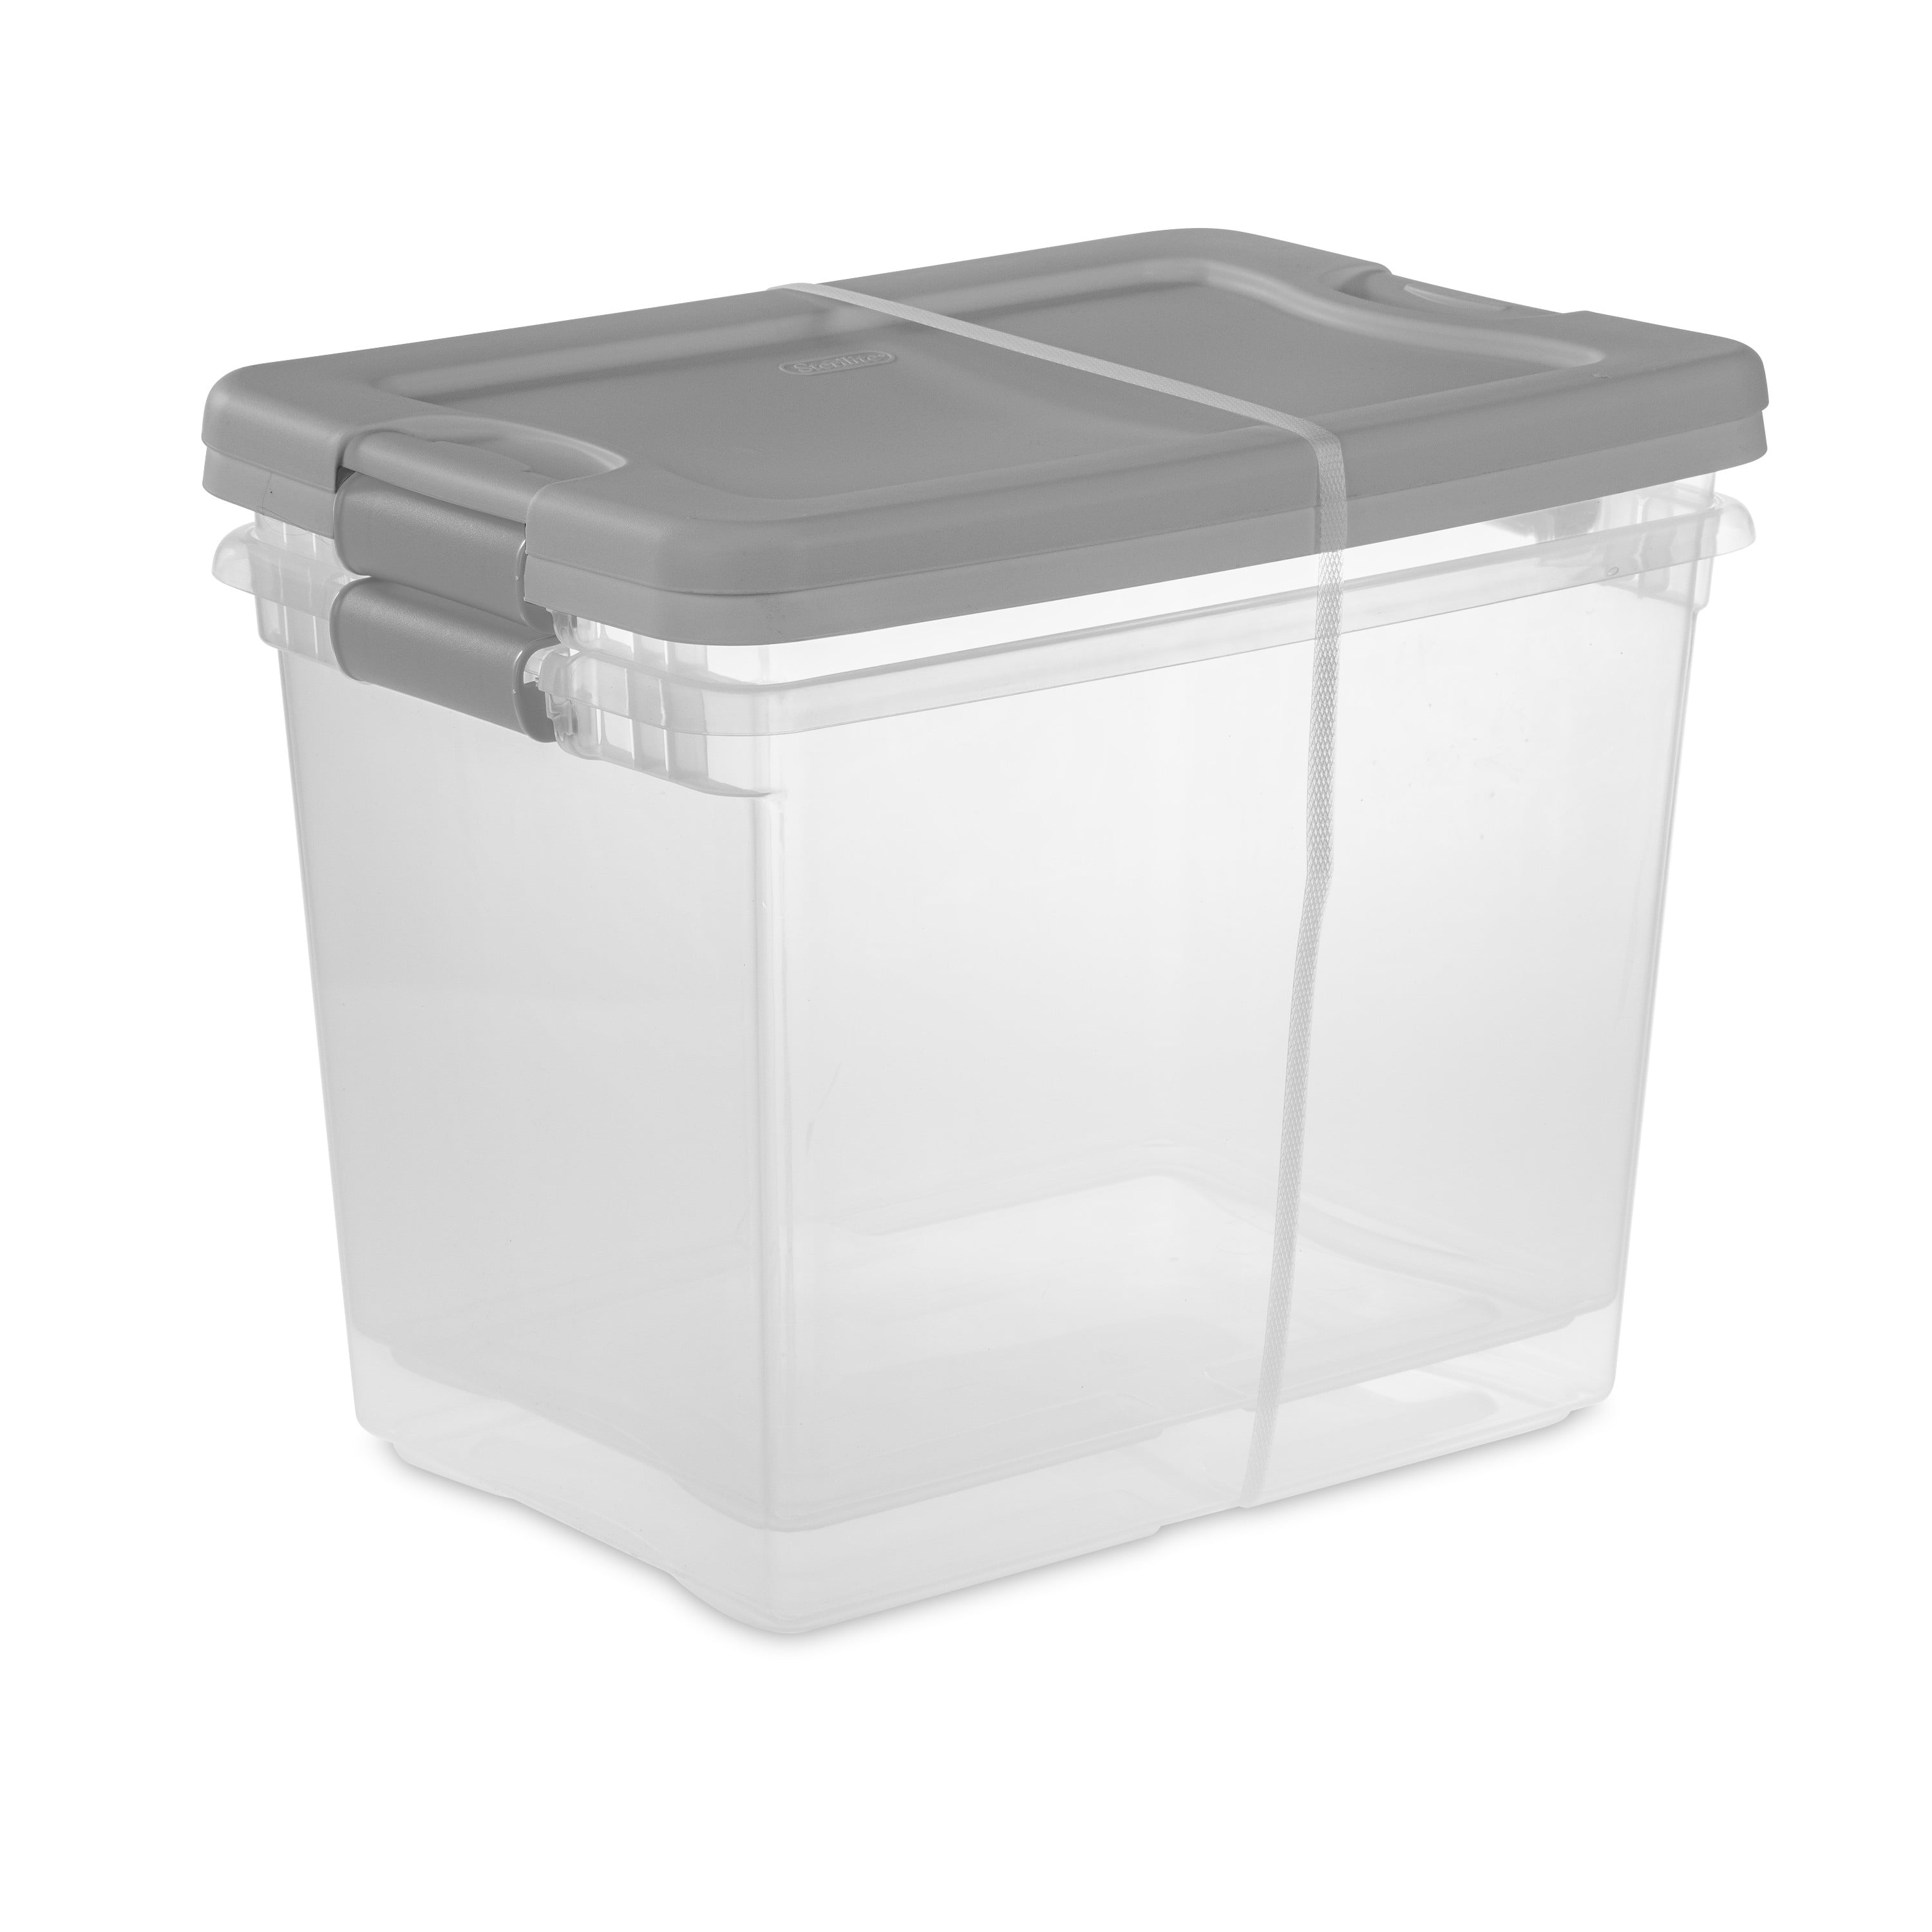 Sterilite 6 qt. Storage Box Plastic, Titanium, Set of 40